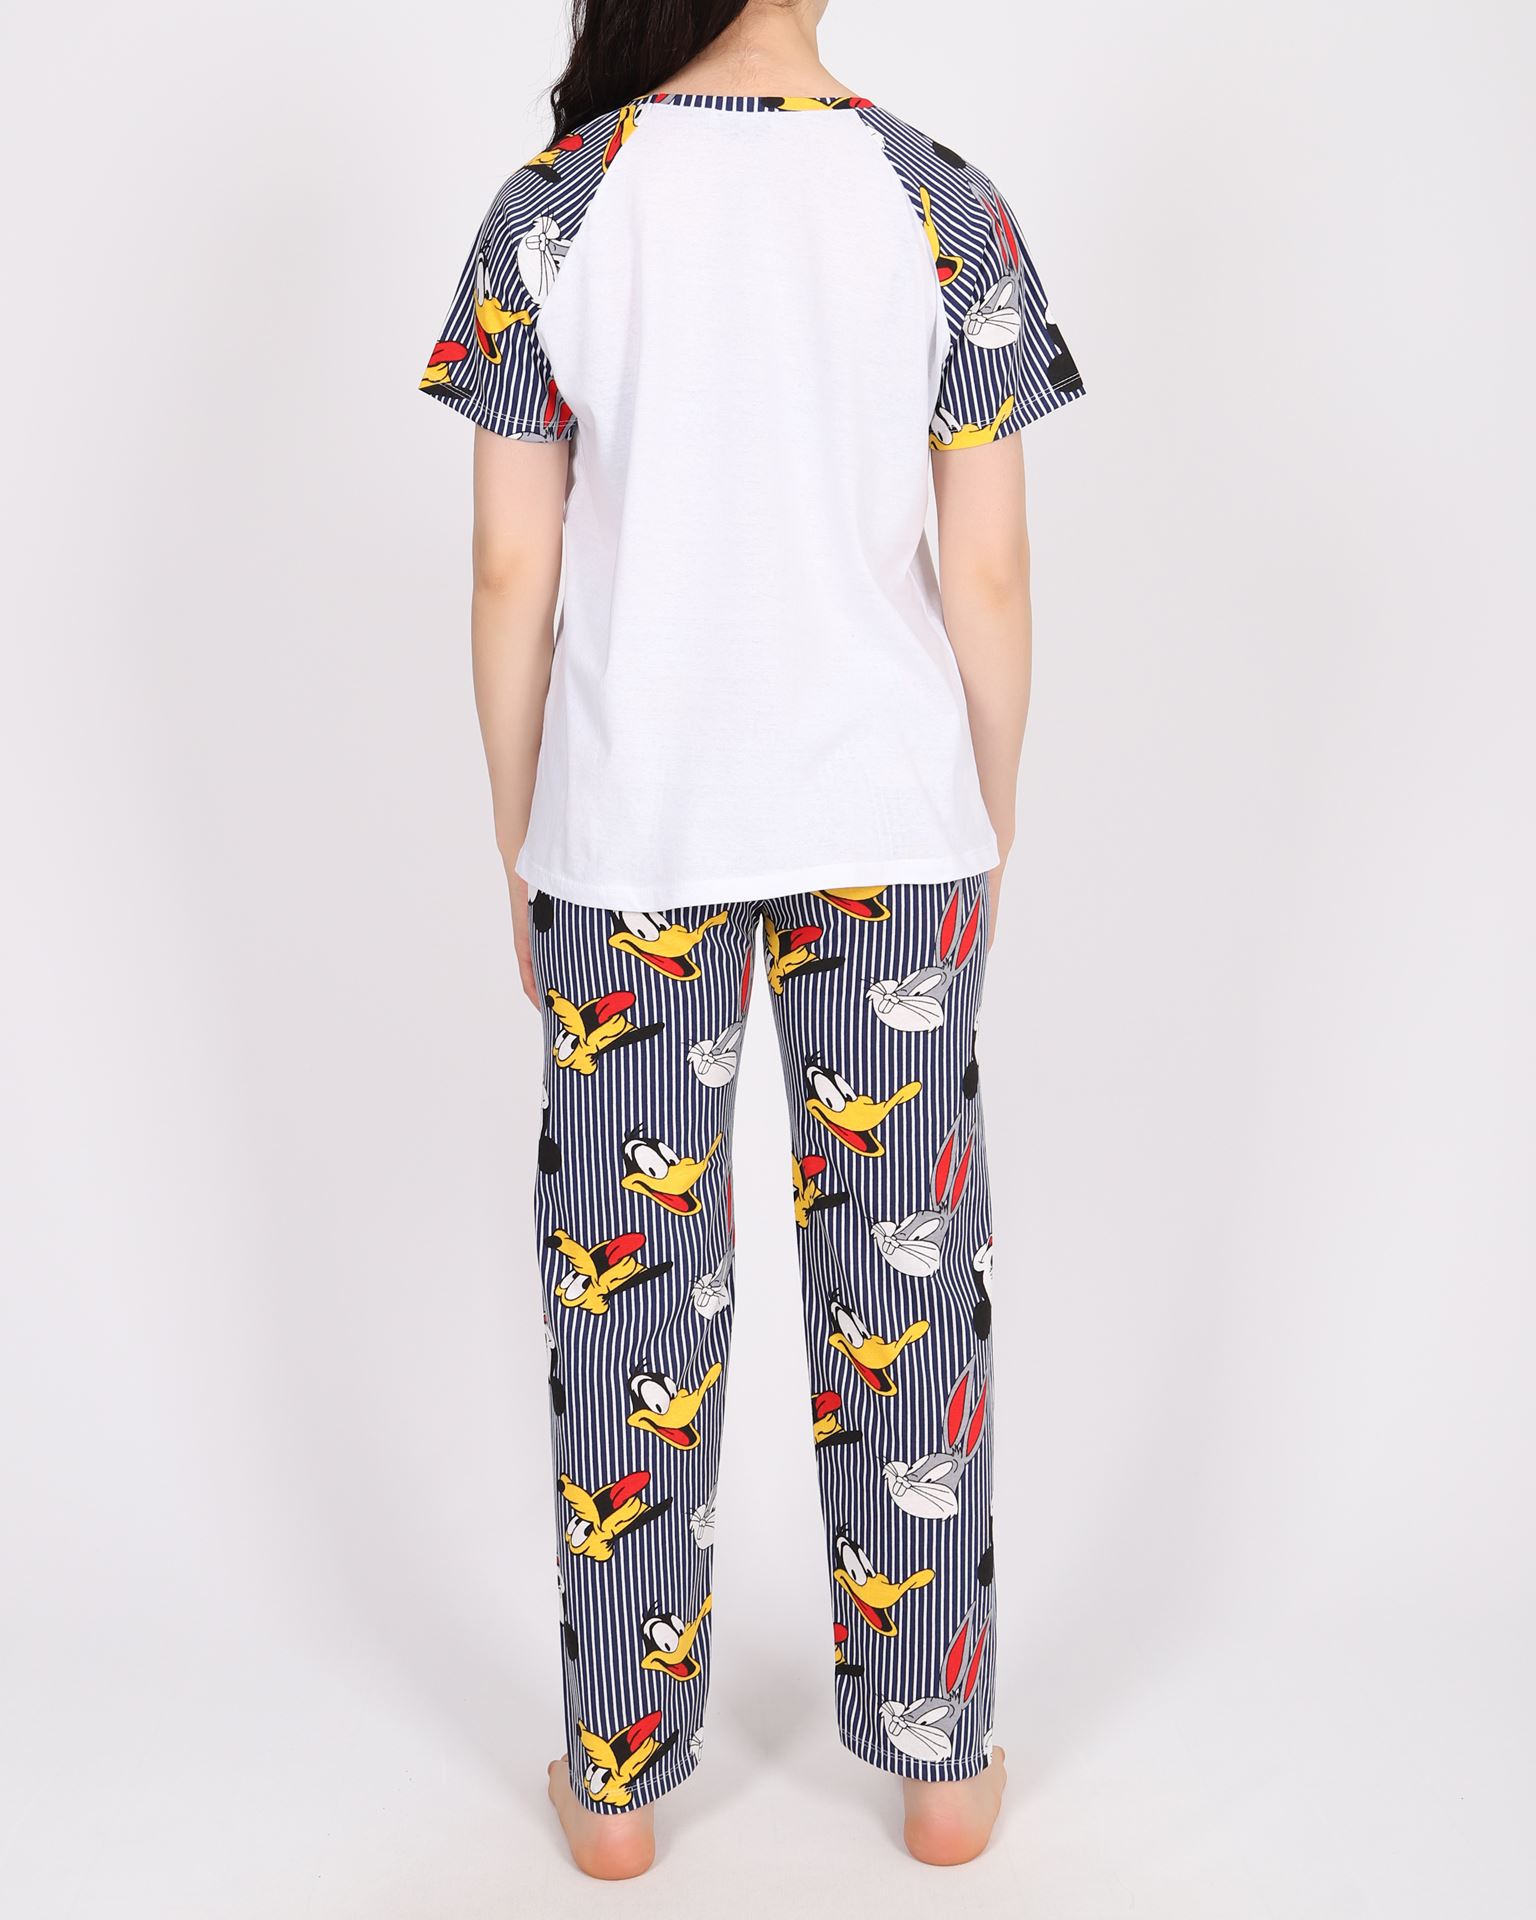 Uyku Bantlı Pijama Takımı PJM1516